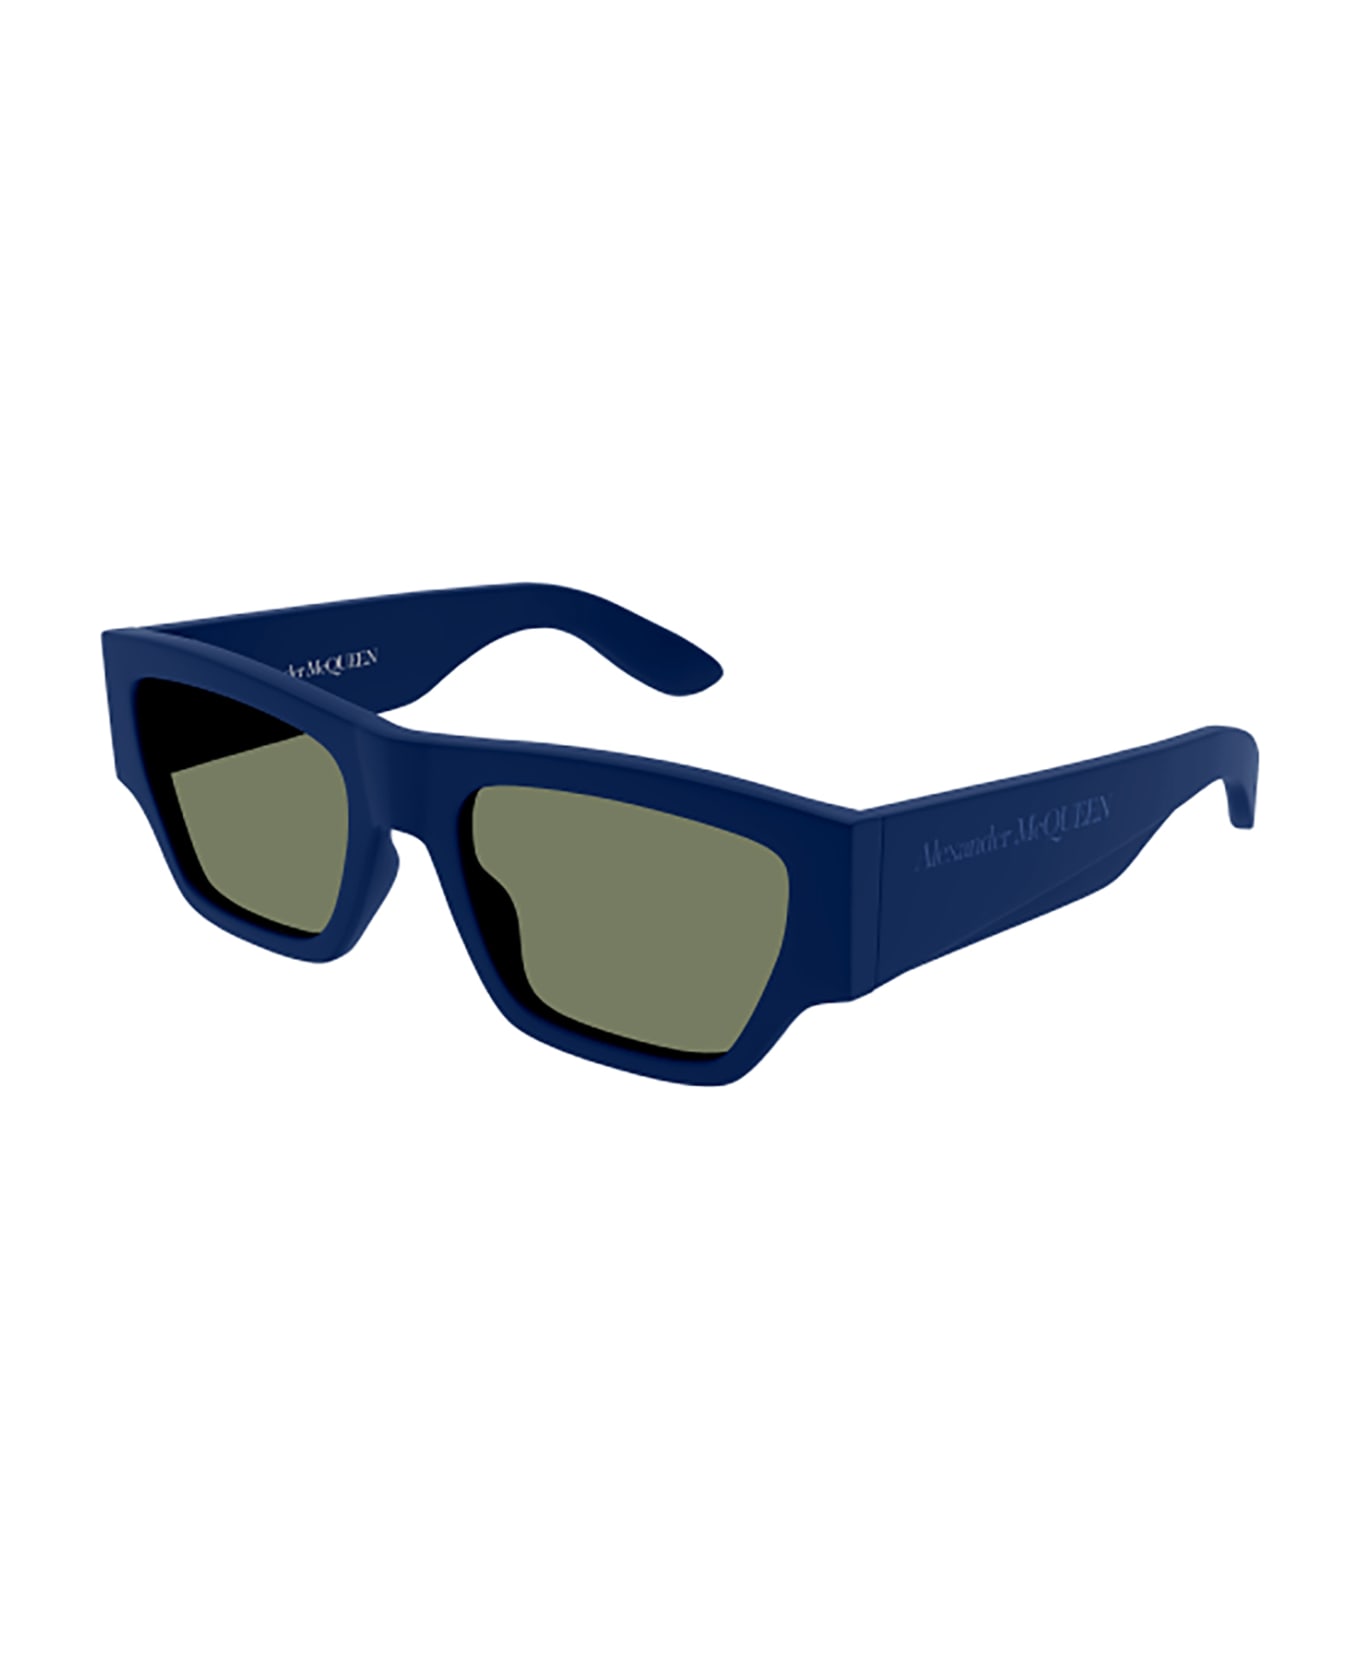 Alexander McQueen Eyewear 1fqq4mf0a - ray ban hexagonal frame sunglasses item